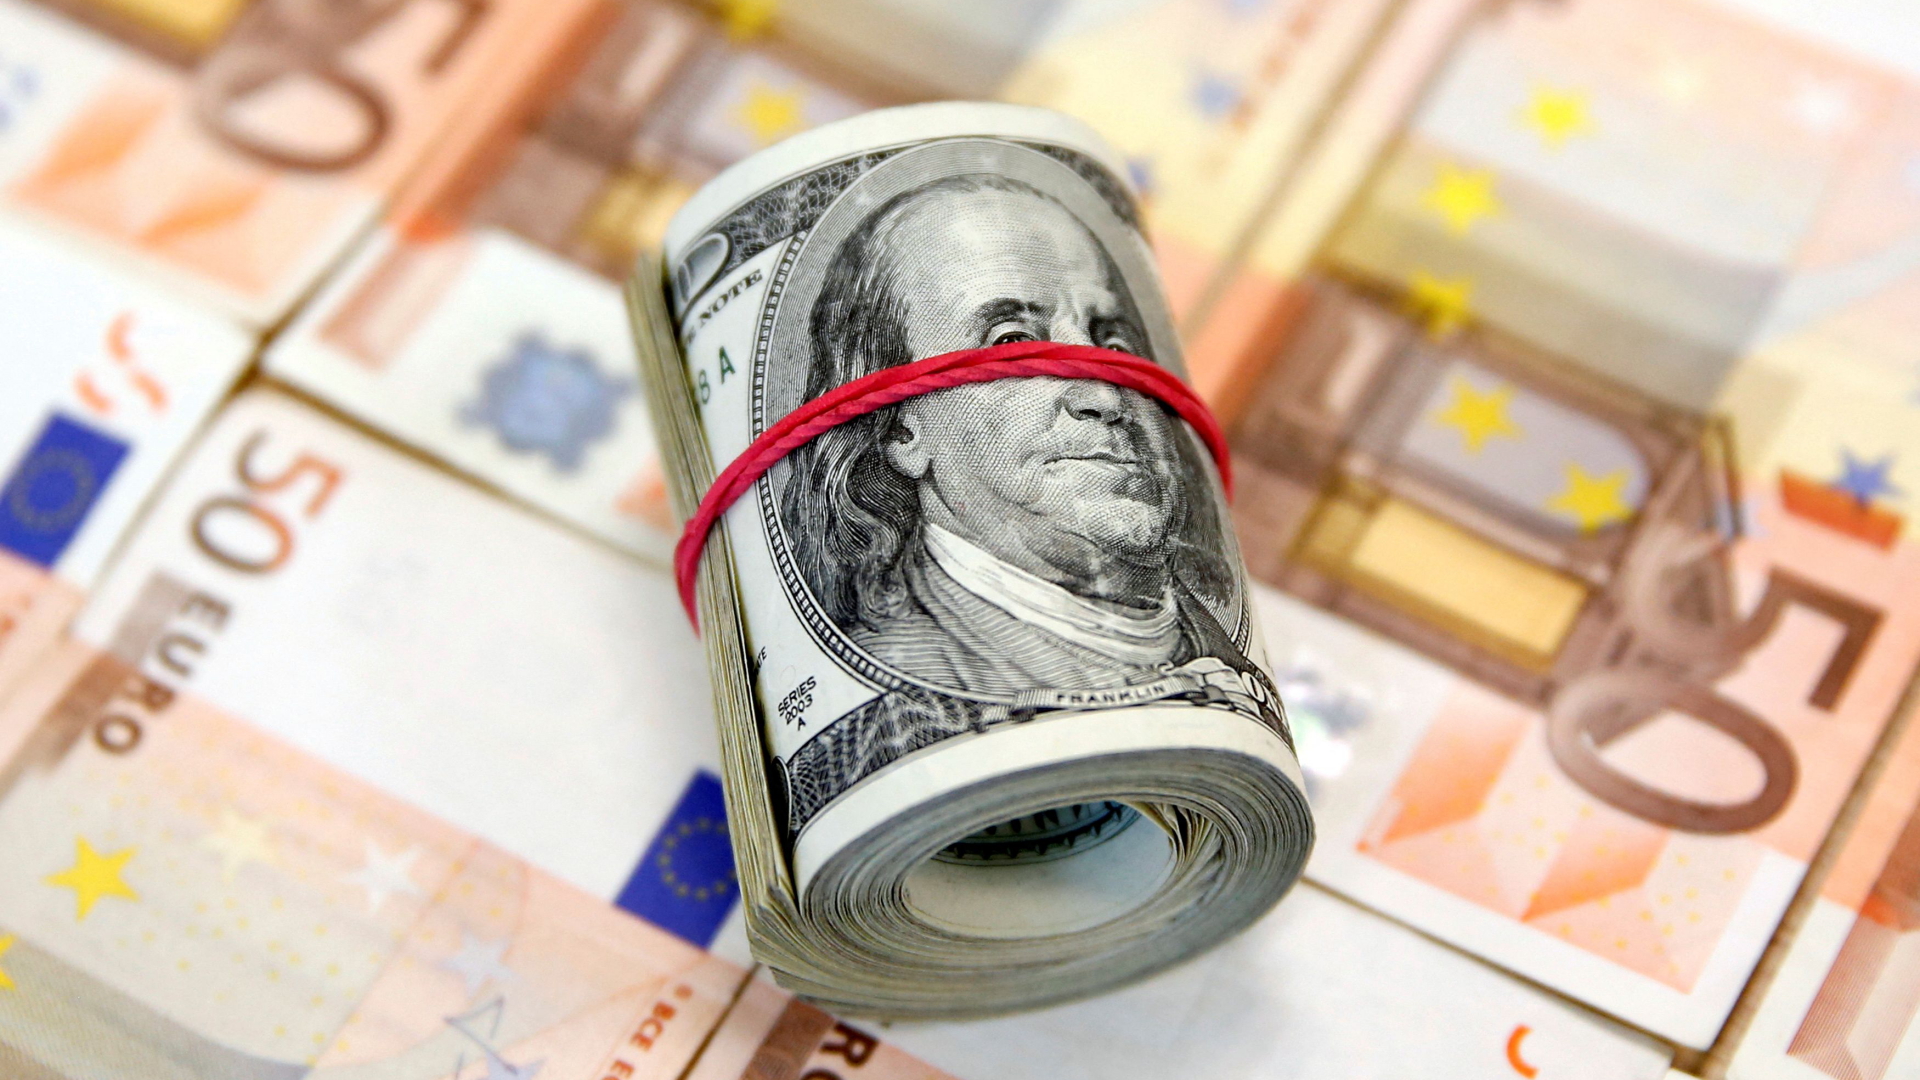 Gerolltes Bündel mit Dollar-Banknoten liegt auf 50-Euro-Geldscheinen